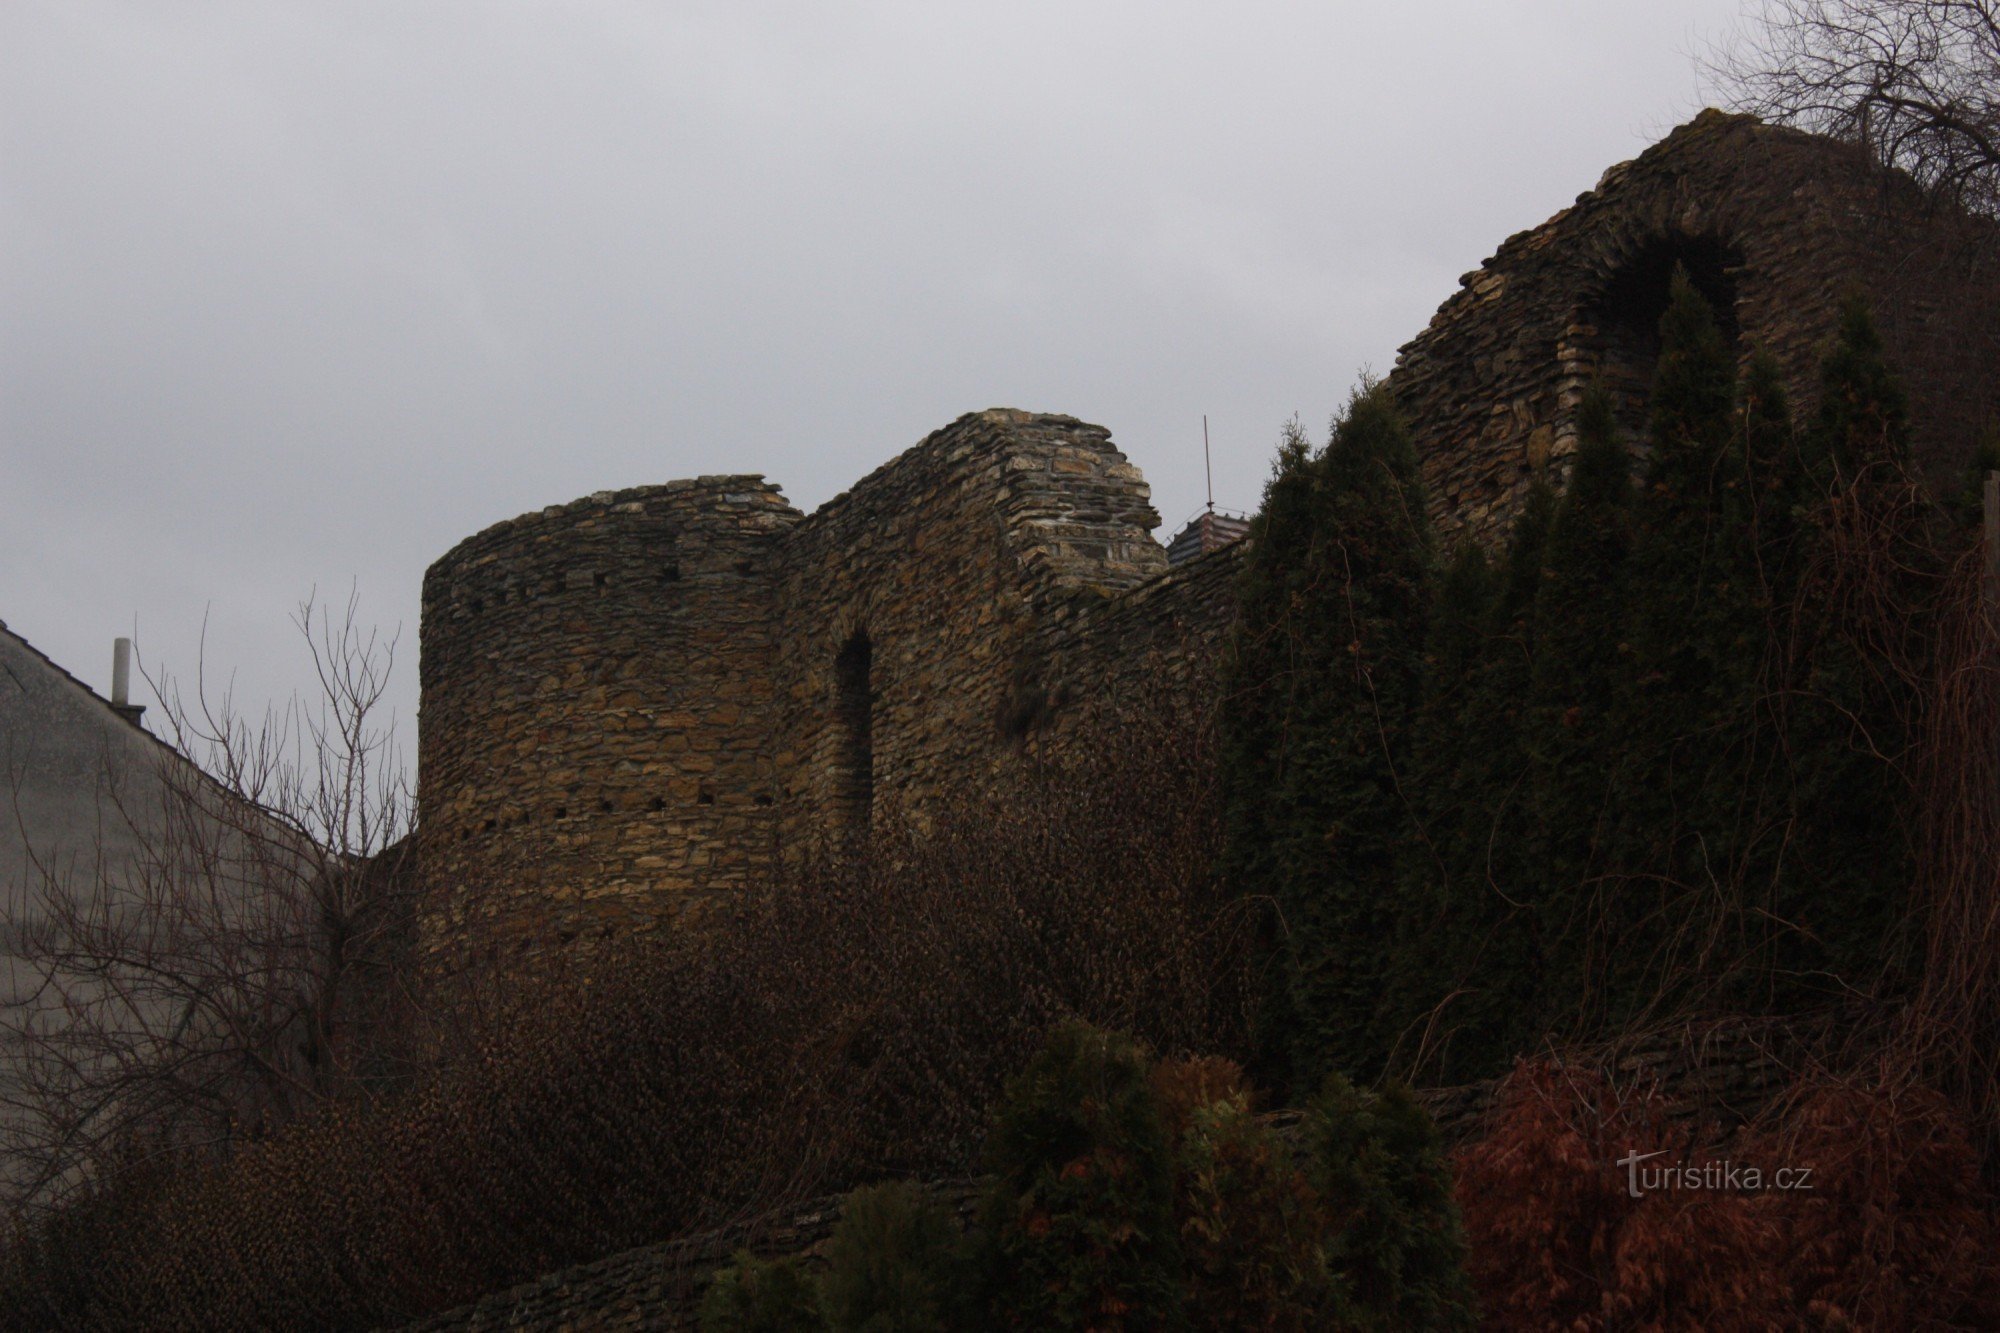 Restos do sistema de fortificação do século XV em Přerov